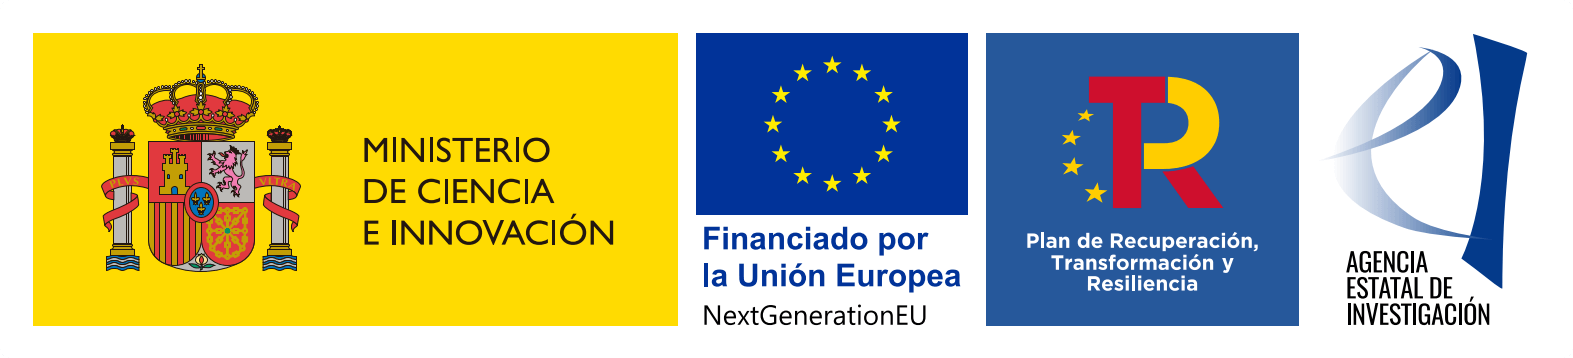 Ministerio de Ciencia e Innovación - Financiado por la Unión Europea